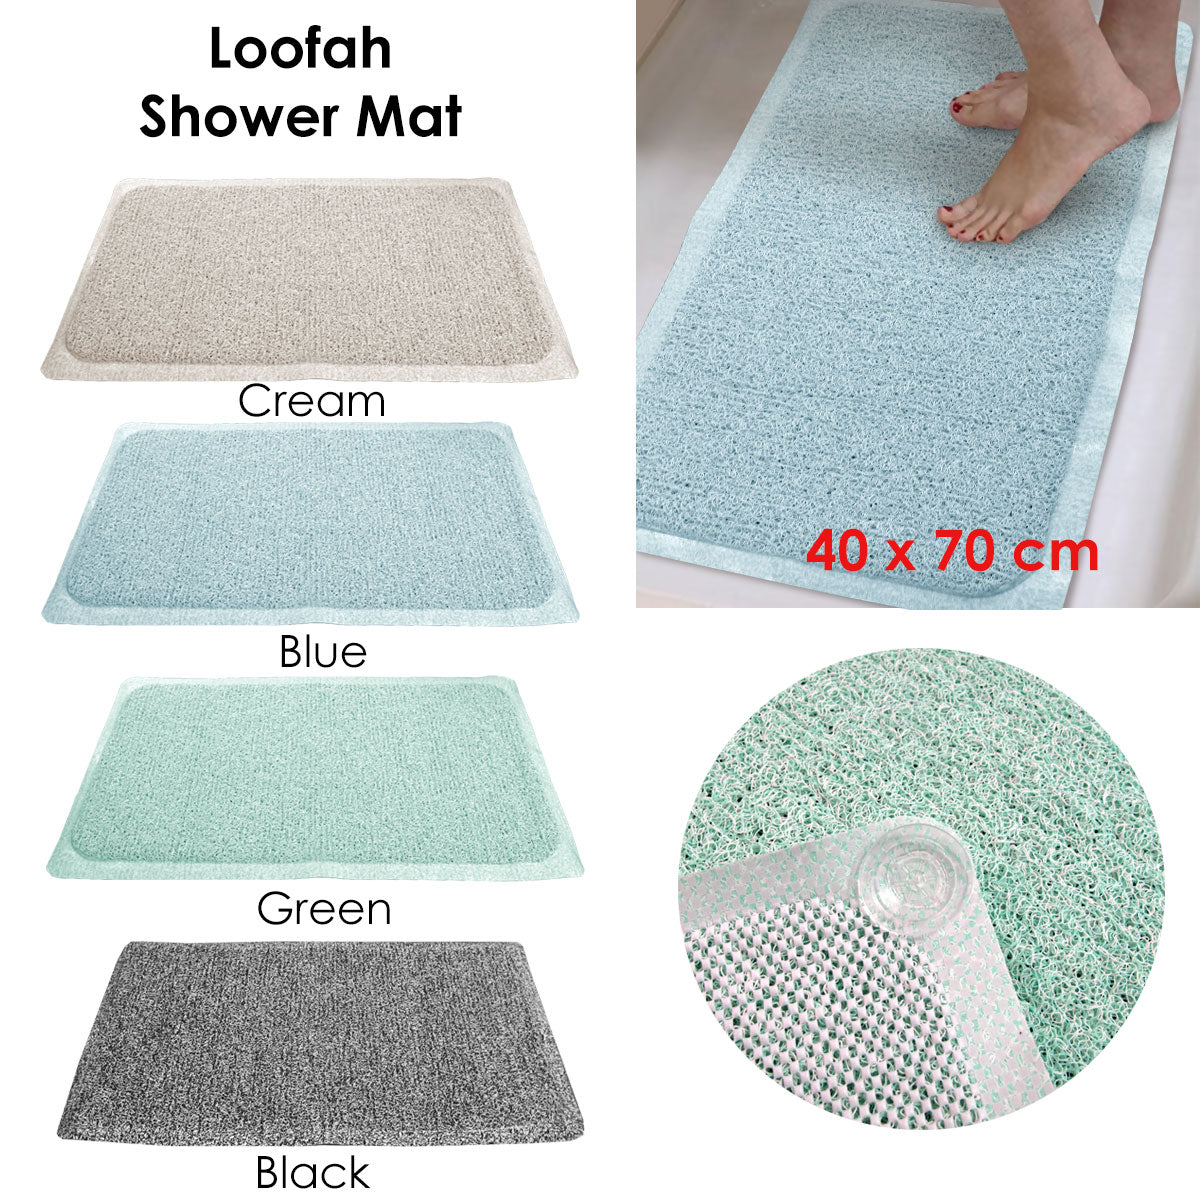 Loofah Shower Mat Blue - Newstart Furniture